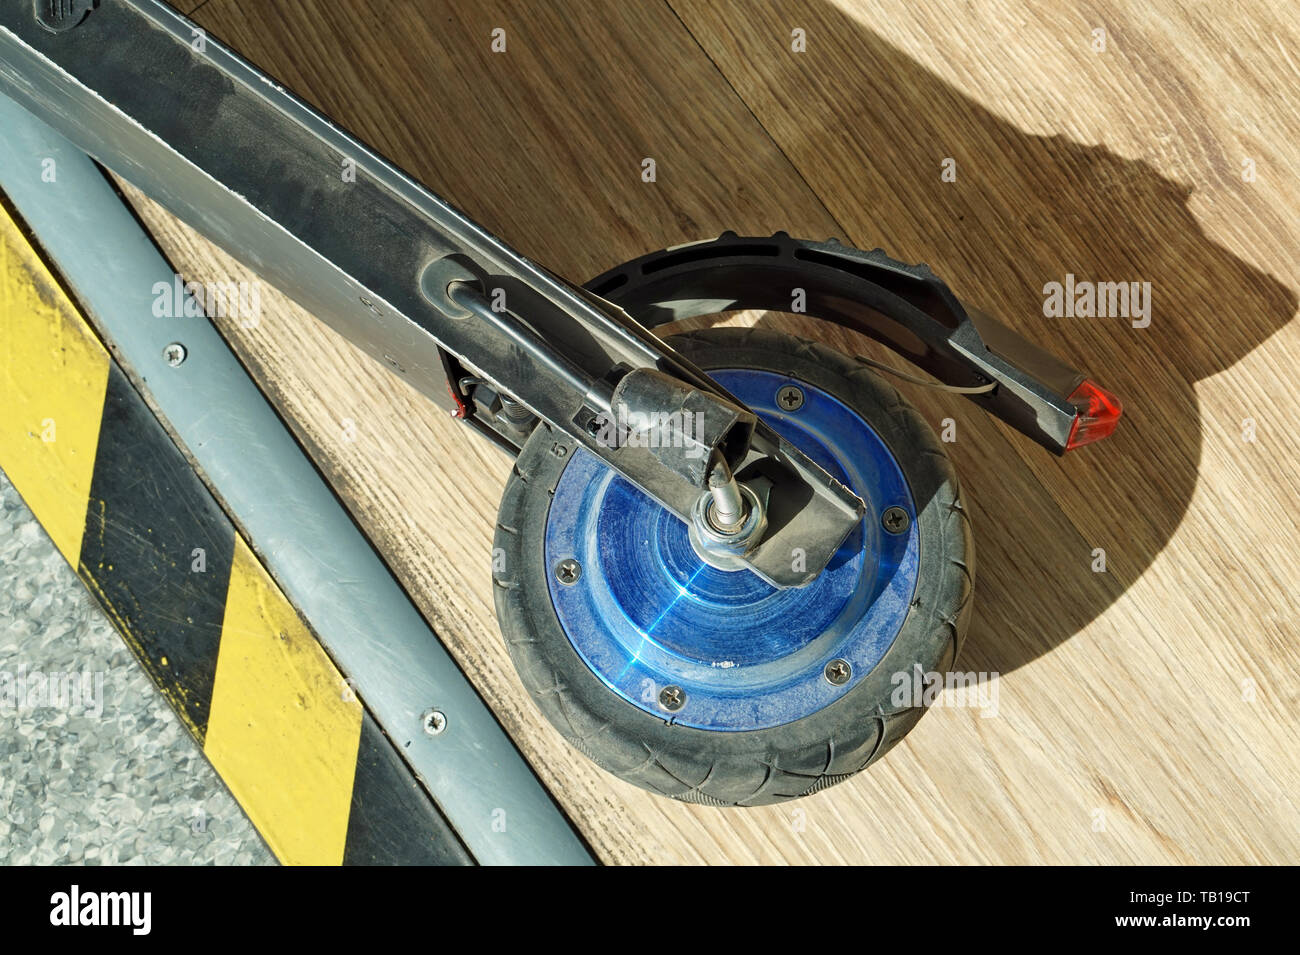 Gebrochen Rad von einem kleinen, modernen elektrischen scooter auf dem Hintergrund einer Holzboden Stockfoto